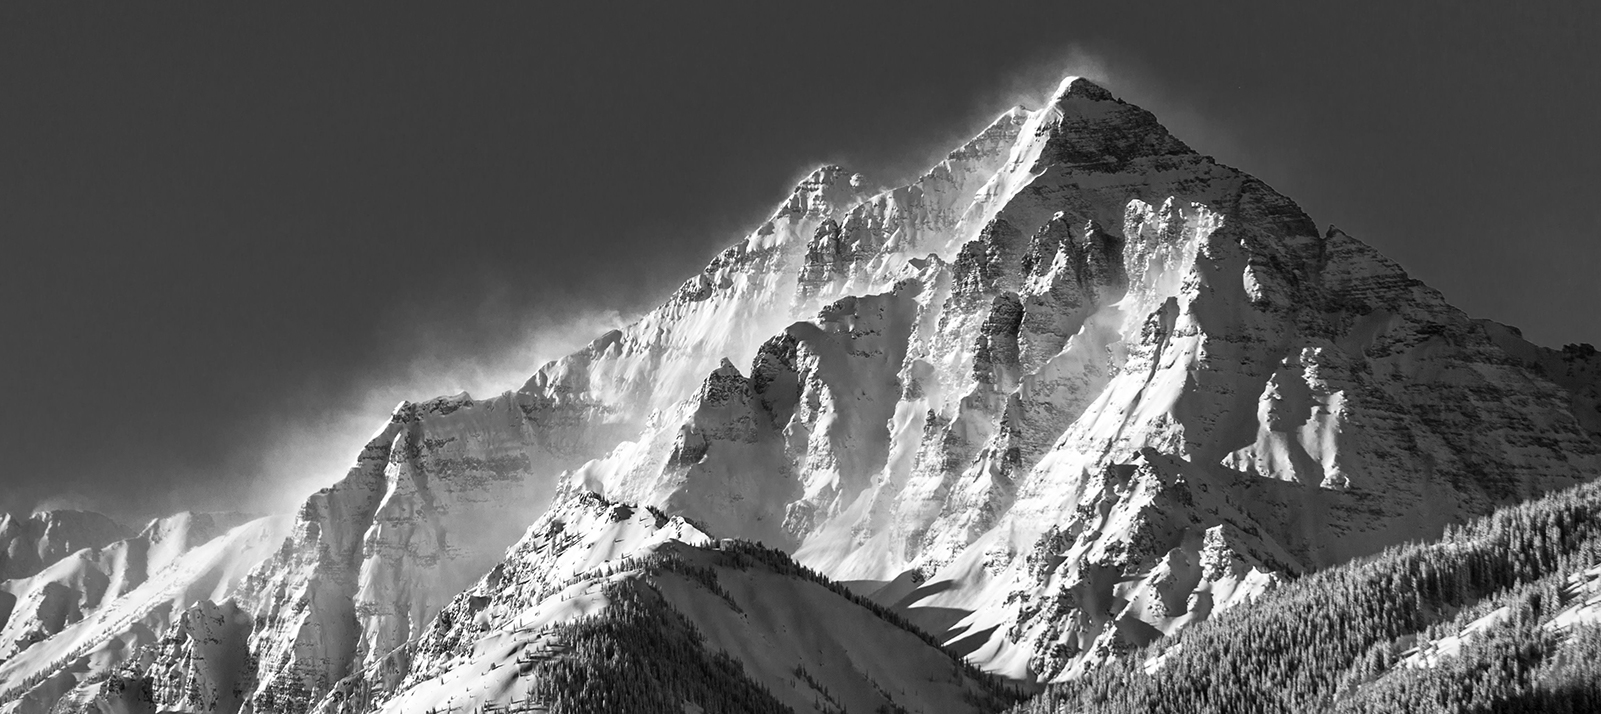 Black and white windblown snowy mountain peak.